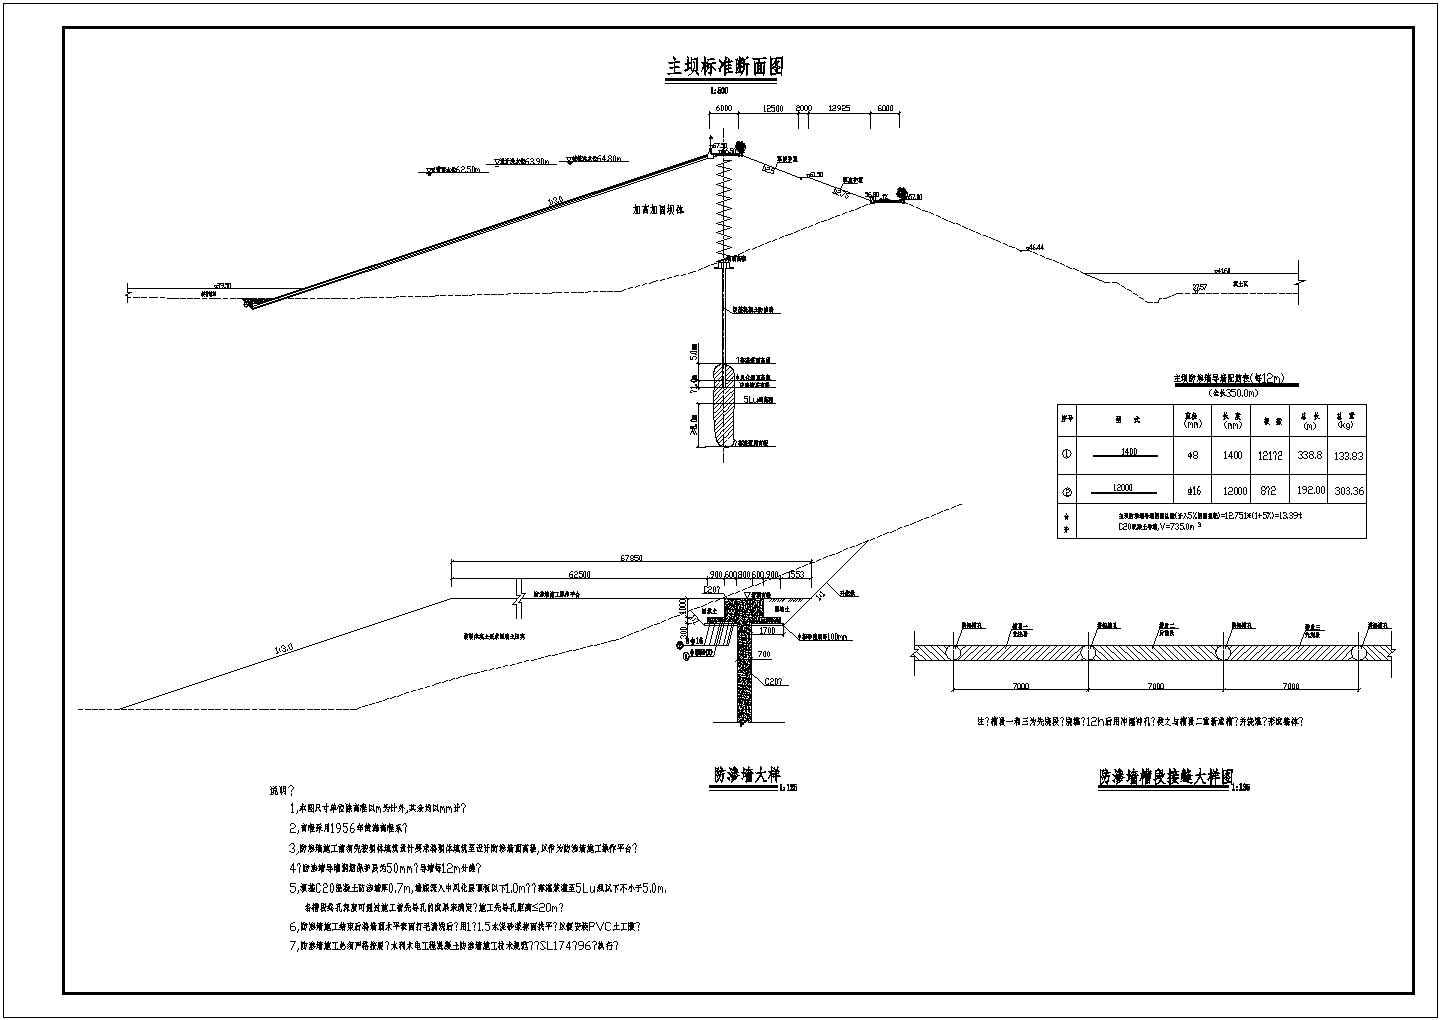 主坝防渗墙及灌浆层施工图（编制于2008年）